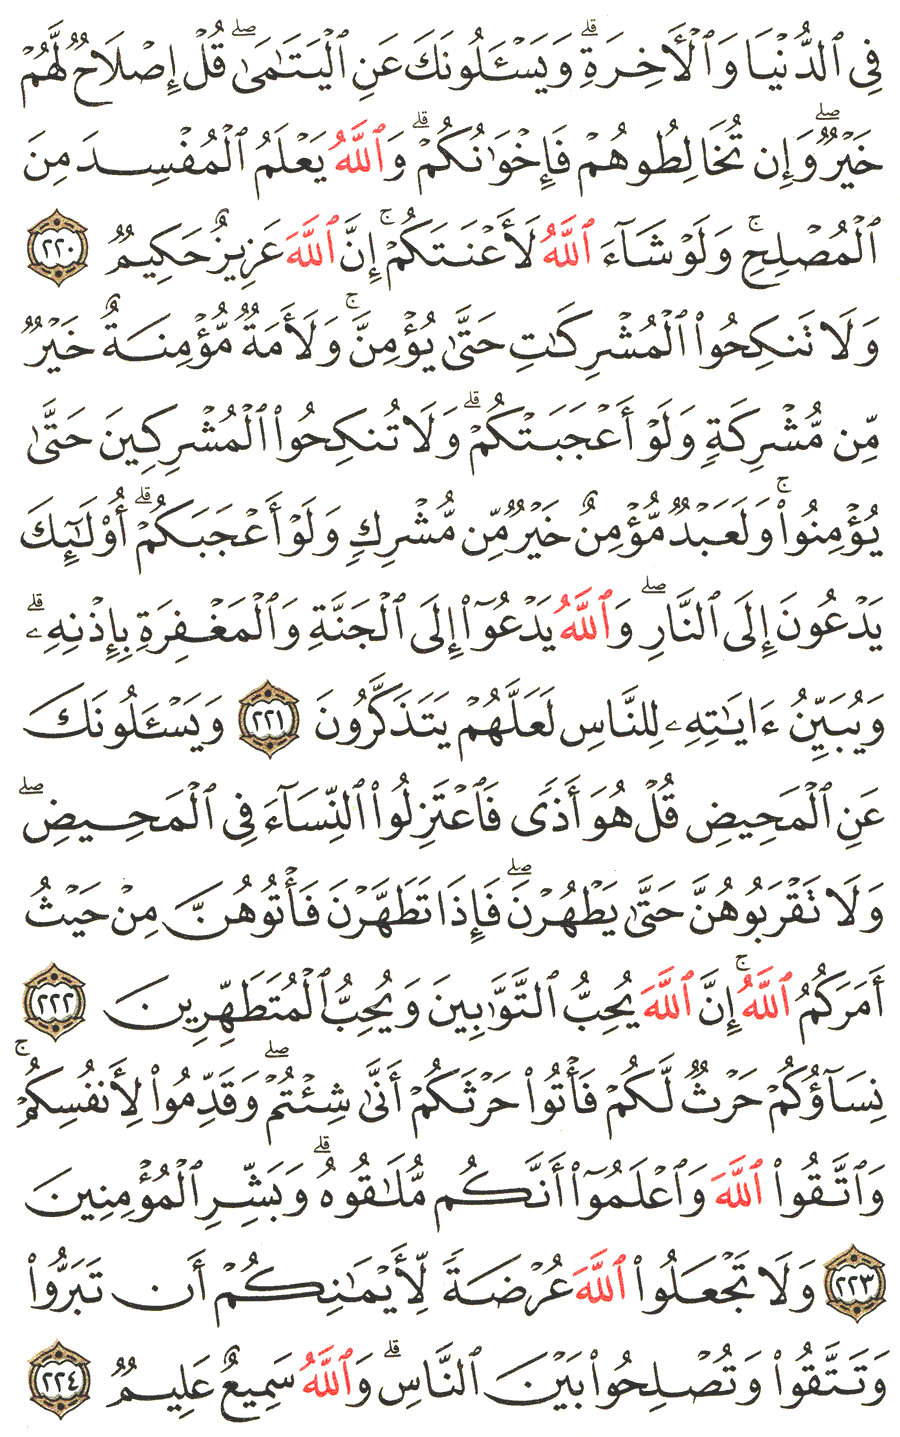 الصفحة 35 من القرآن الكريم